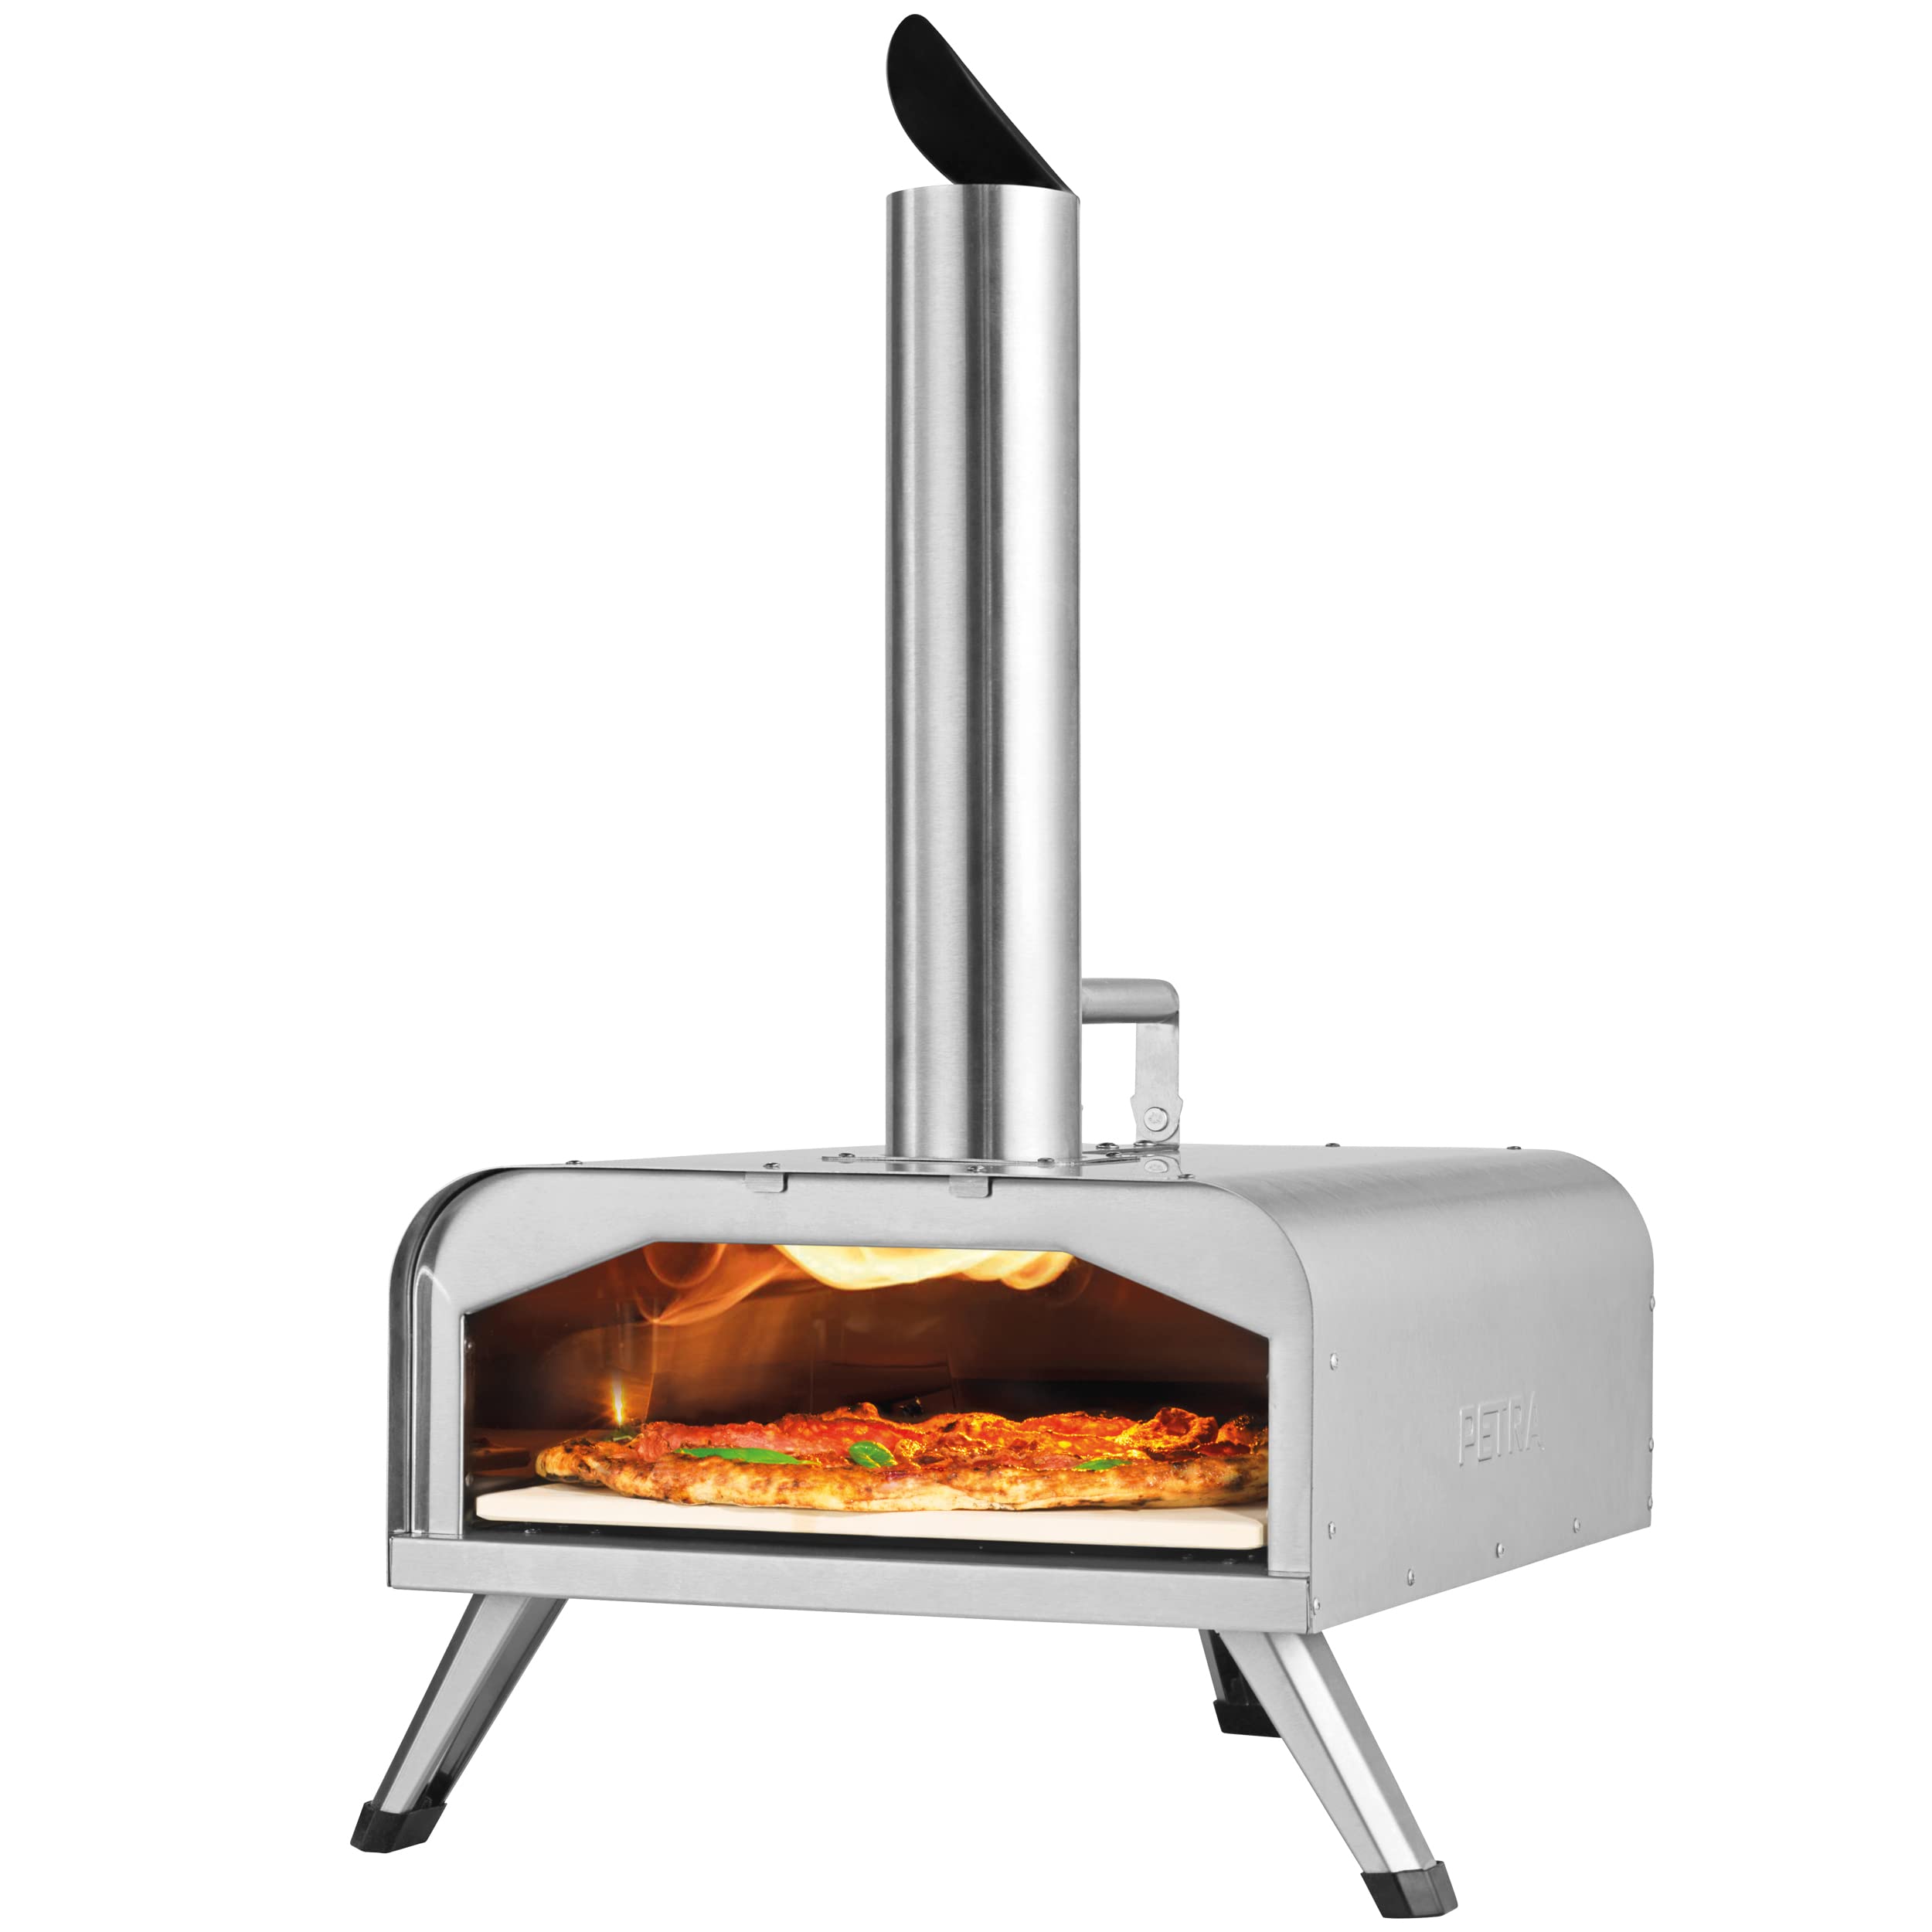 Petra PT5186EU10 tragbarer Outdoor Holzpellet Pizzaofen (12 Zoll), erreicht 500 °C in 15 Minuten, authentische Holzofen-Pizza in 60 Sekunden, Holzpellet Grill inklusive Pizzaschaufel & Pizzastein